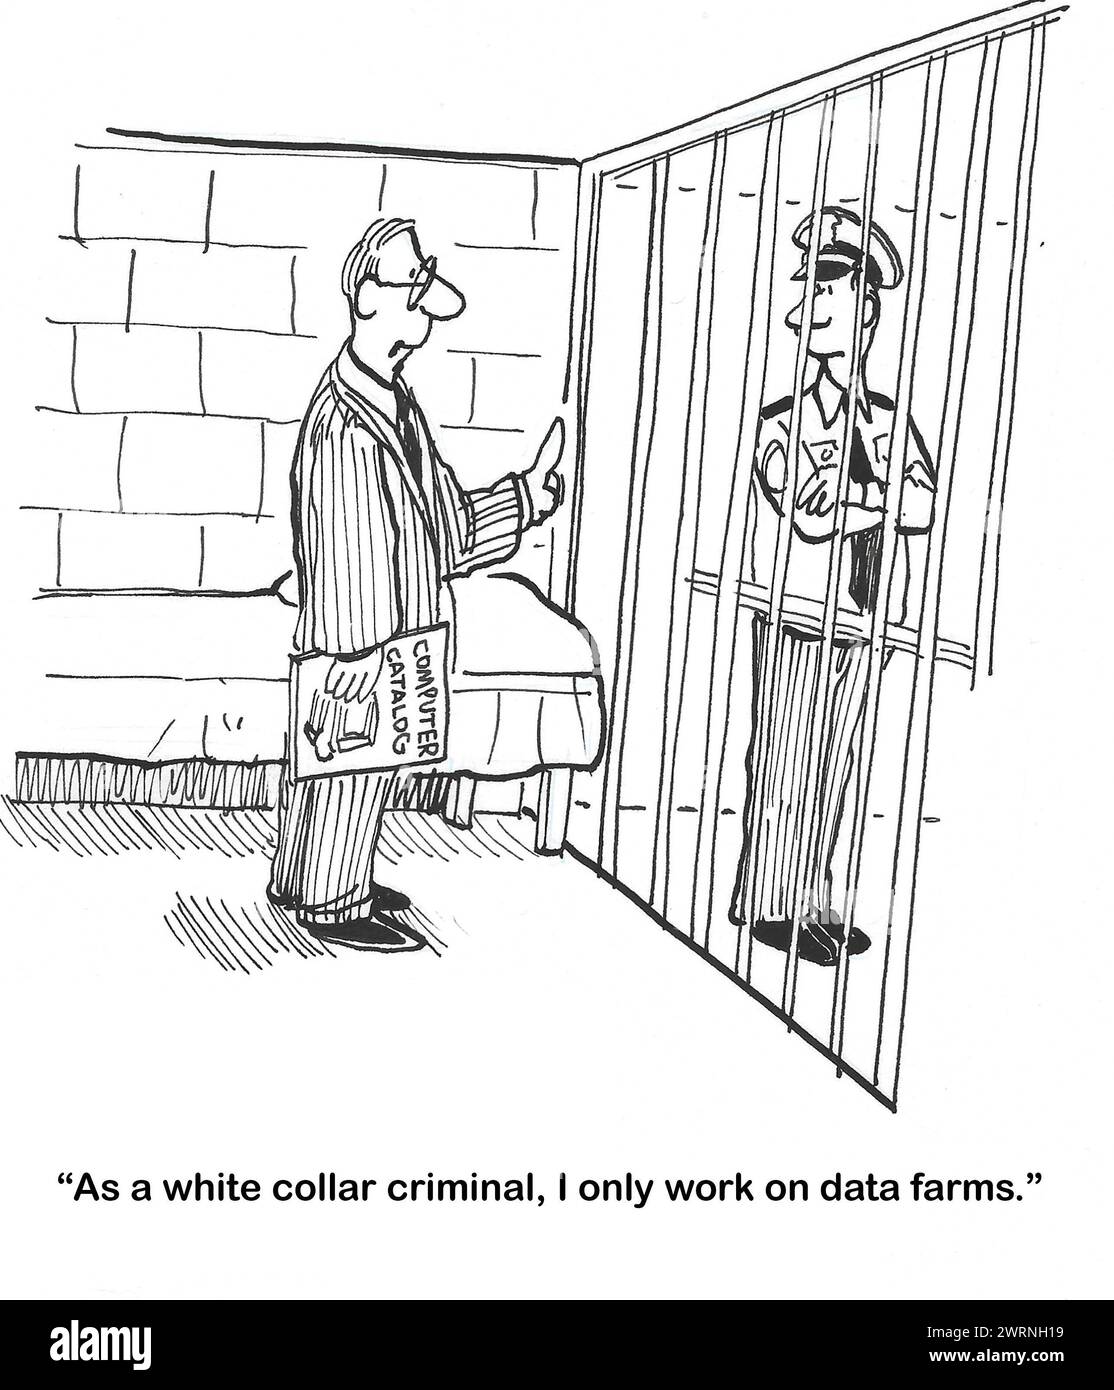 Bande dessinée BW d'un homme professionnel mis en prison en col blanc. Il informe le policier qu'il travaille uniquement sur des fermes de données. Banque D'Images